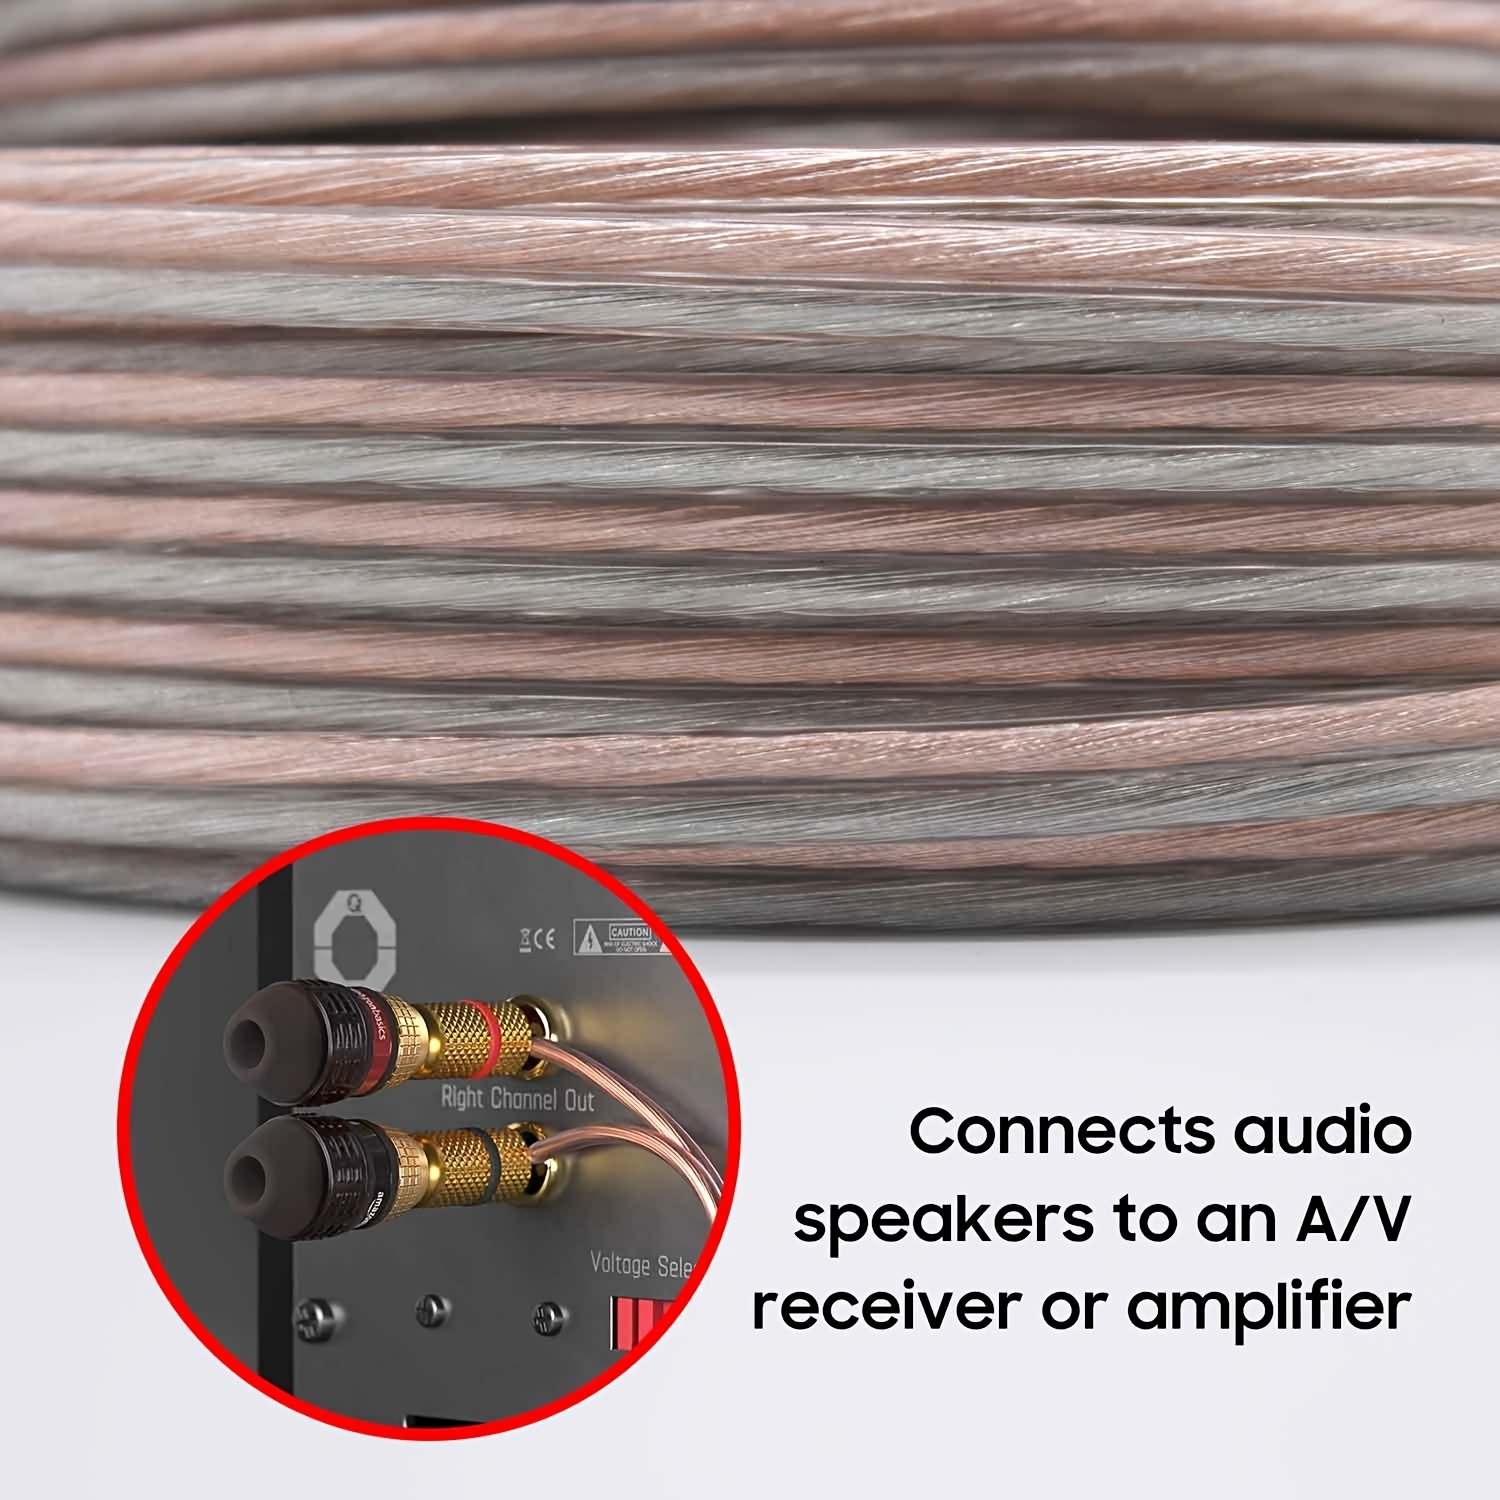 Cable de altavoz de 16 AWG, cable de altavoz de calibre 16 AWG, 50 pies,  gran uso para altavoces de cine en casa y altavoces de automóvil